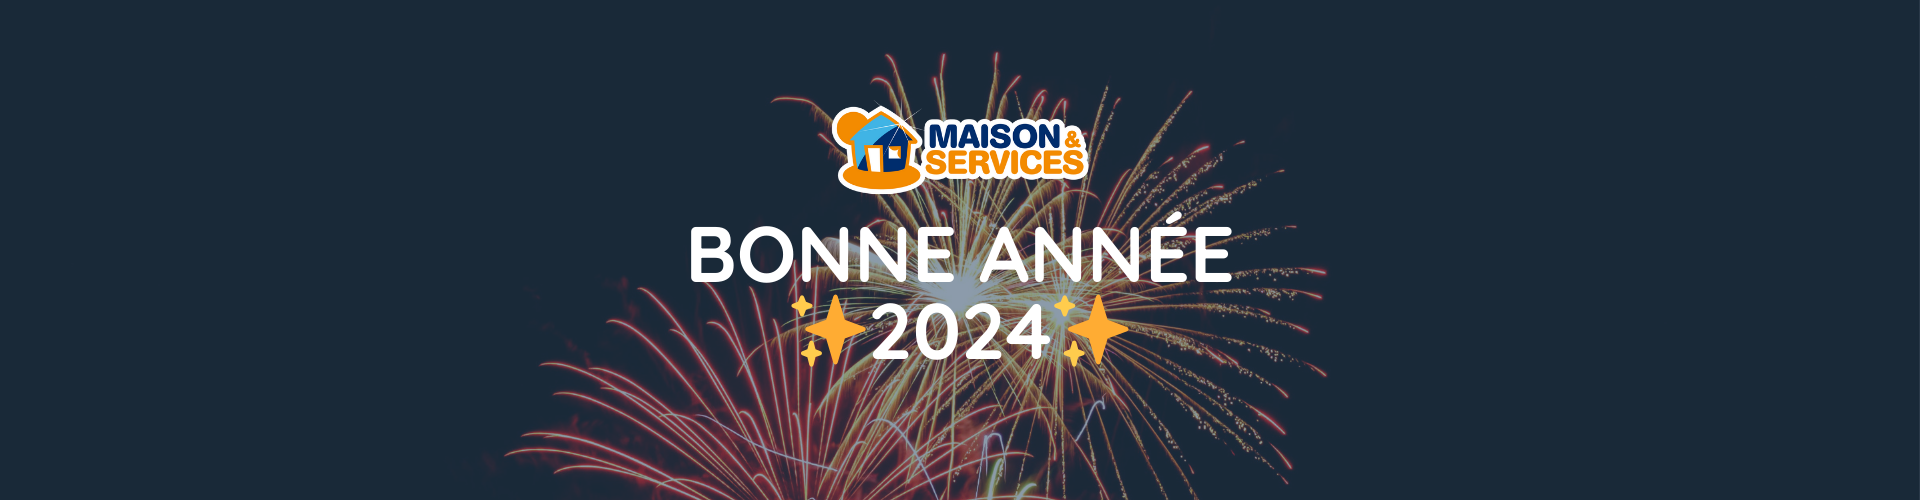 bonne_annee_2024_maison_et_services